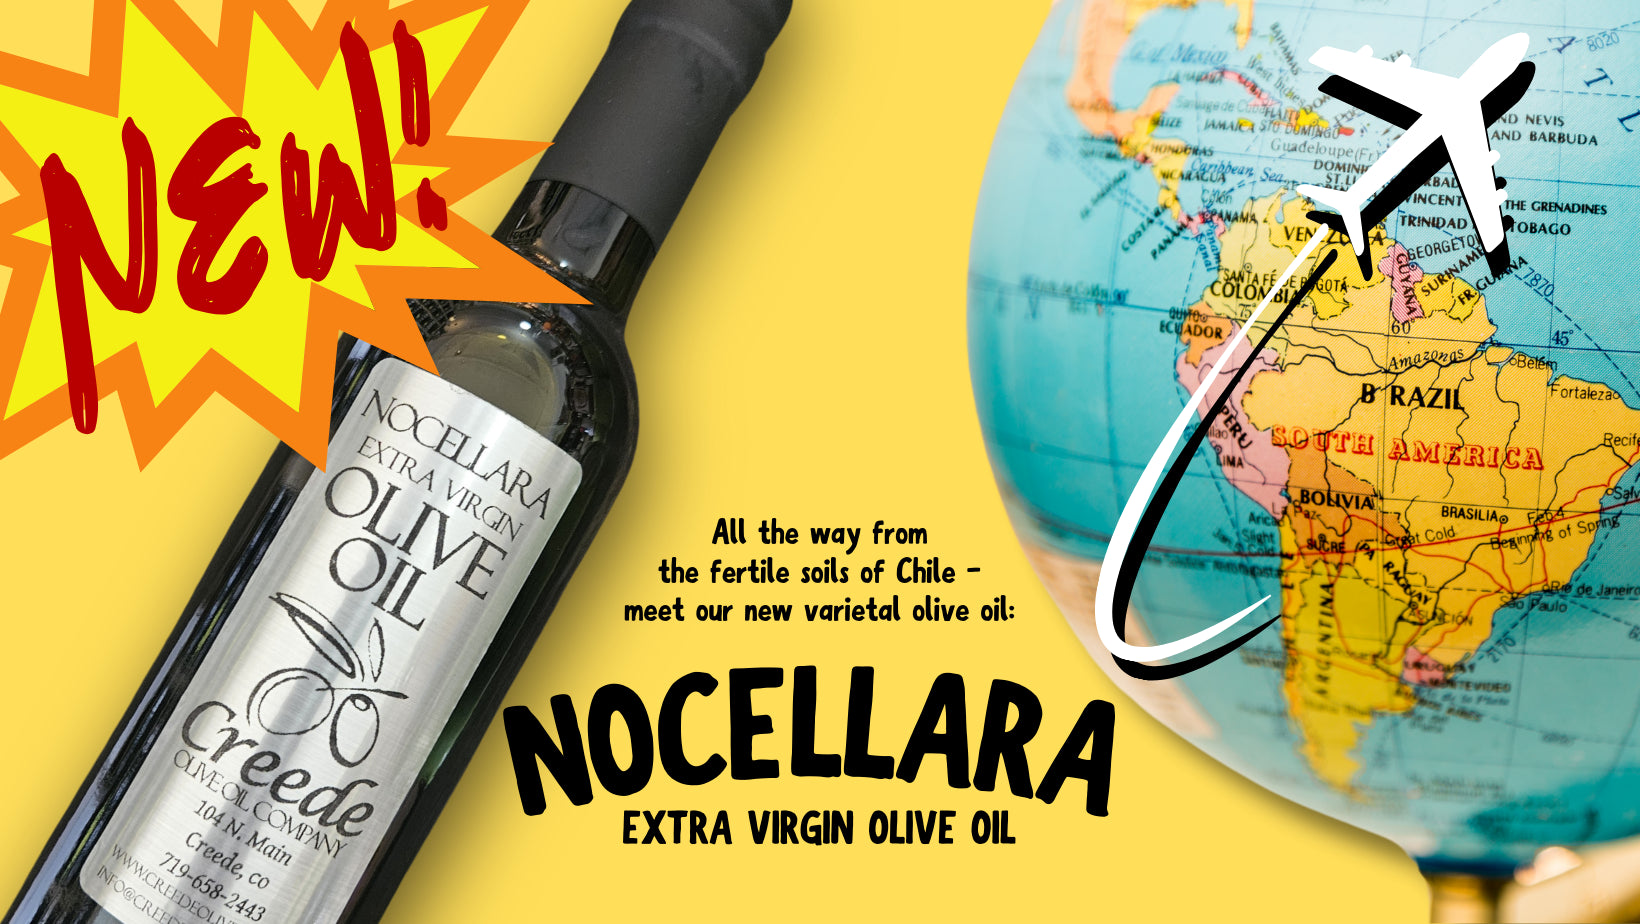 New! Nocellara Varietal Oil